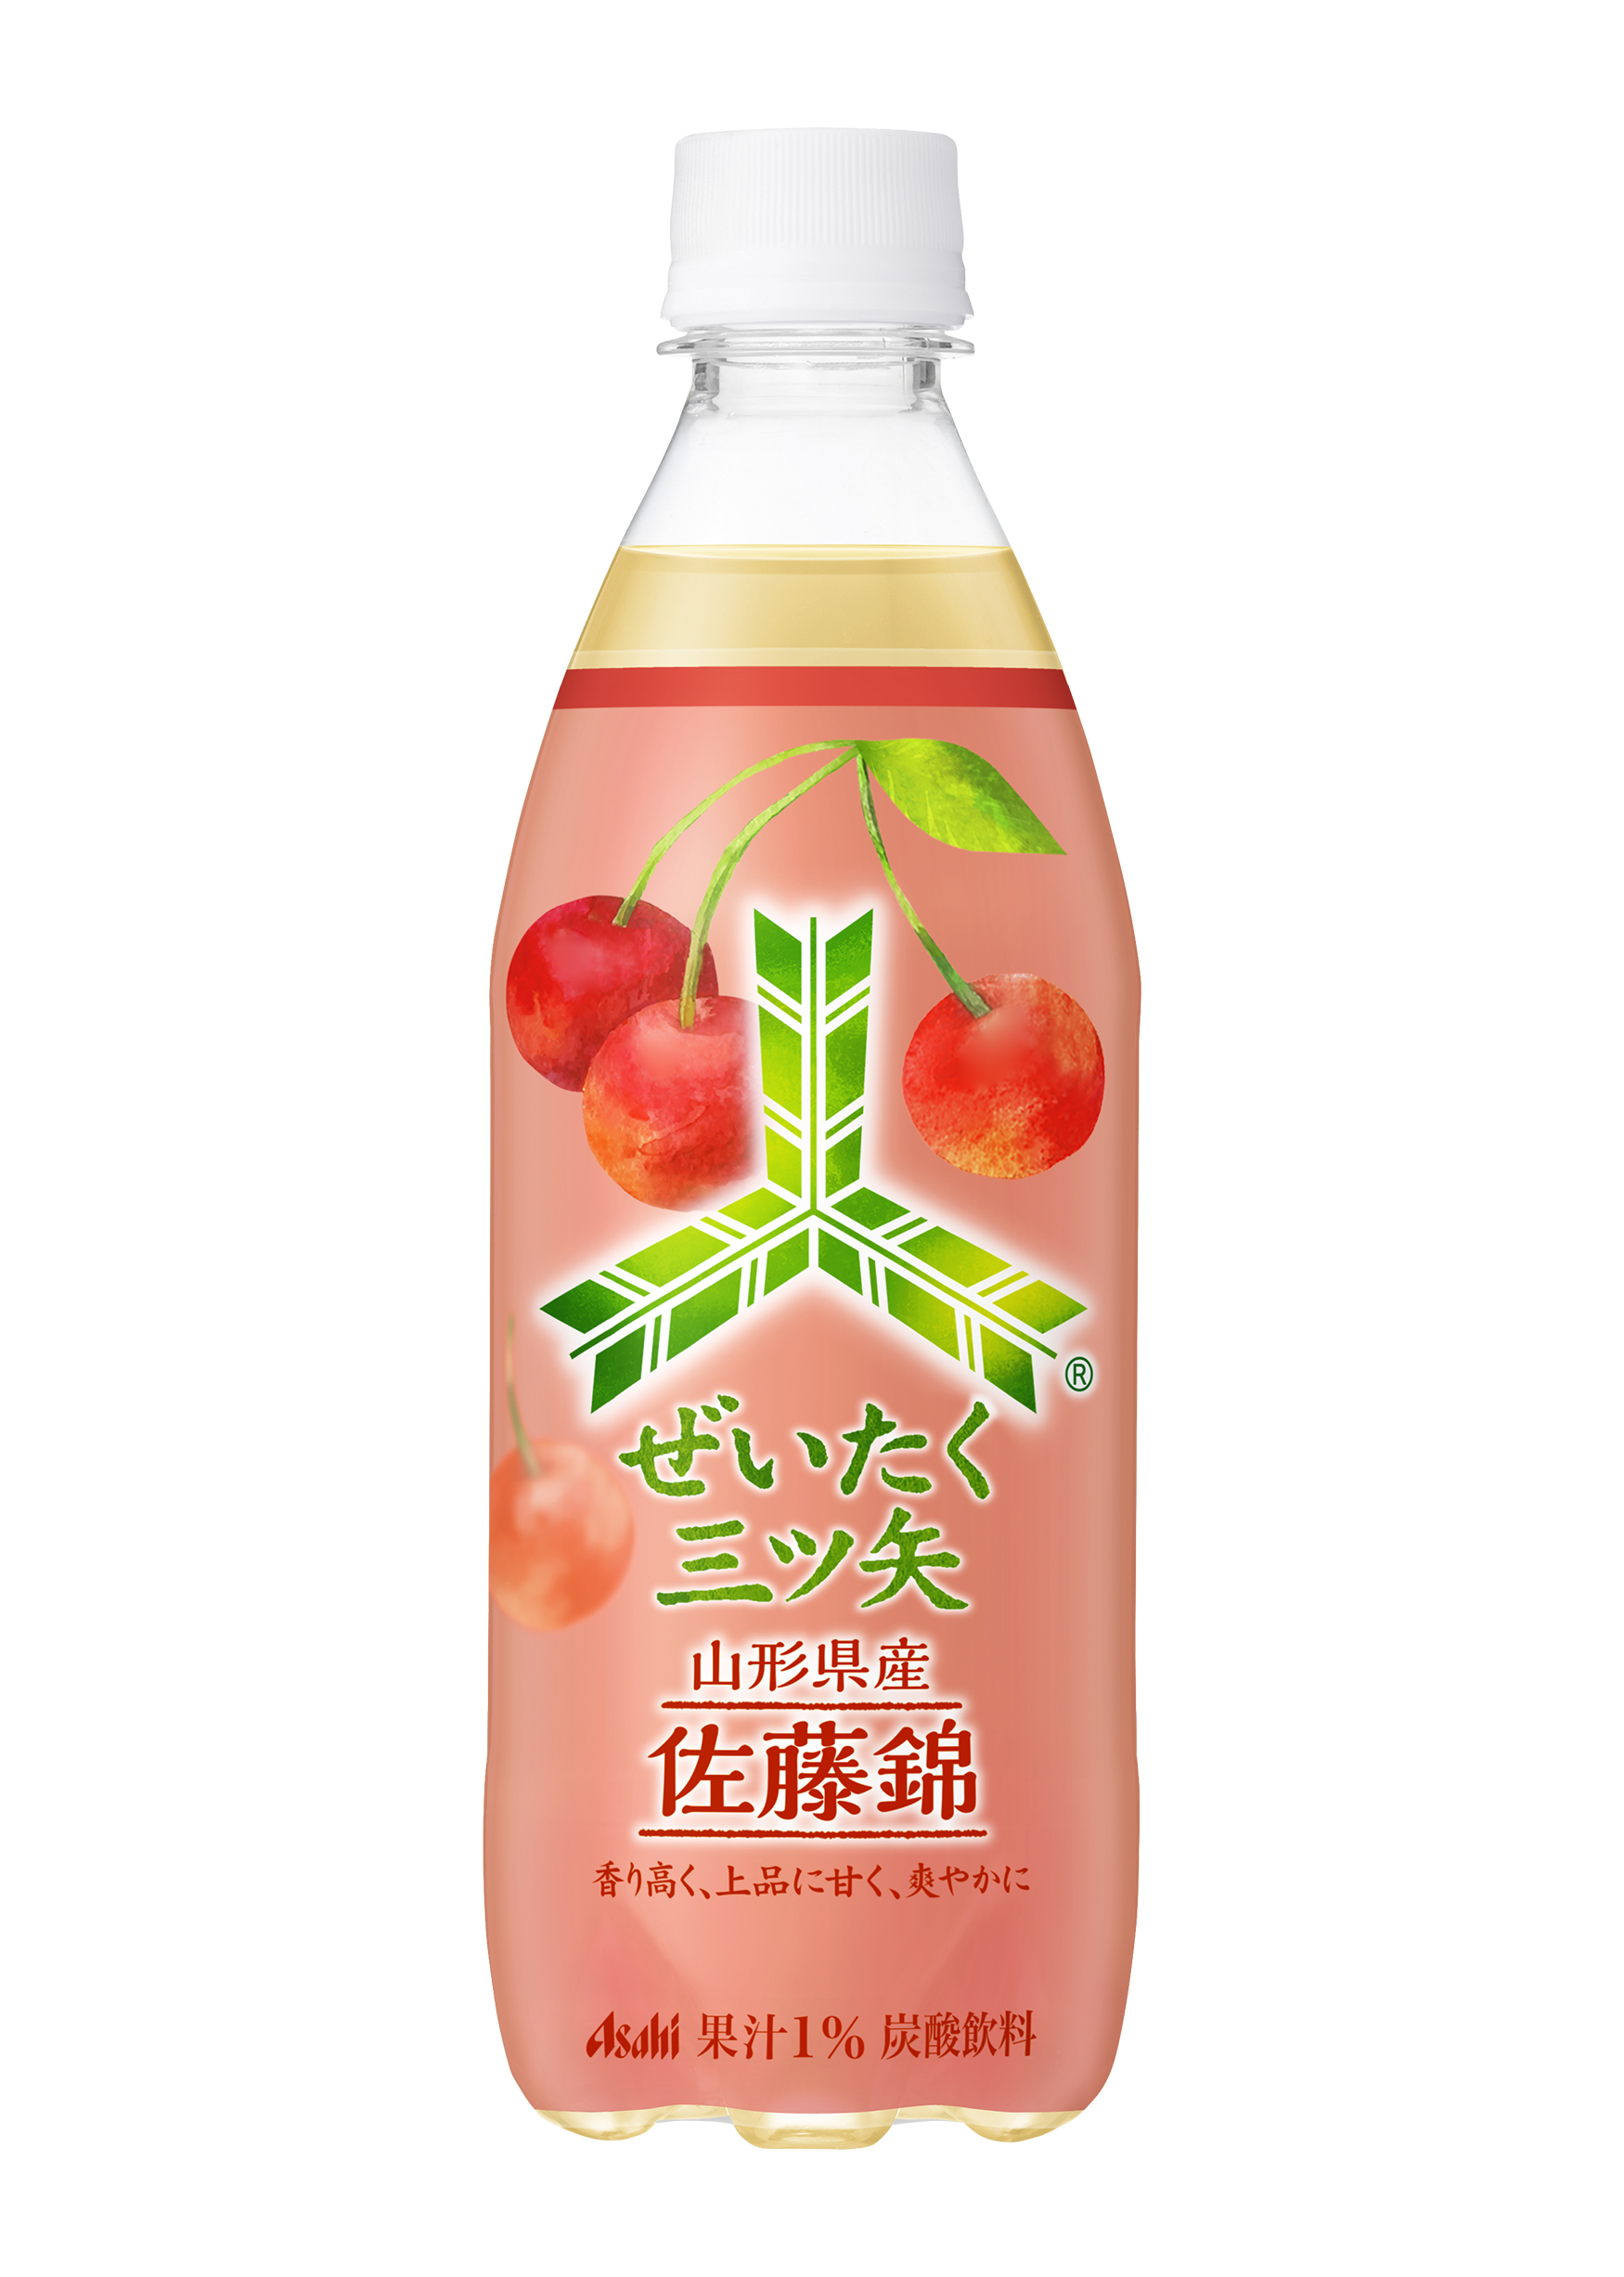 日本うまれの国民的炭酸飲料「三ツ矢」から産地・品種指定の国産果汁を ...